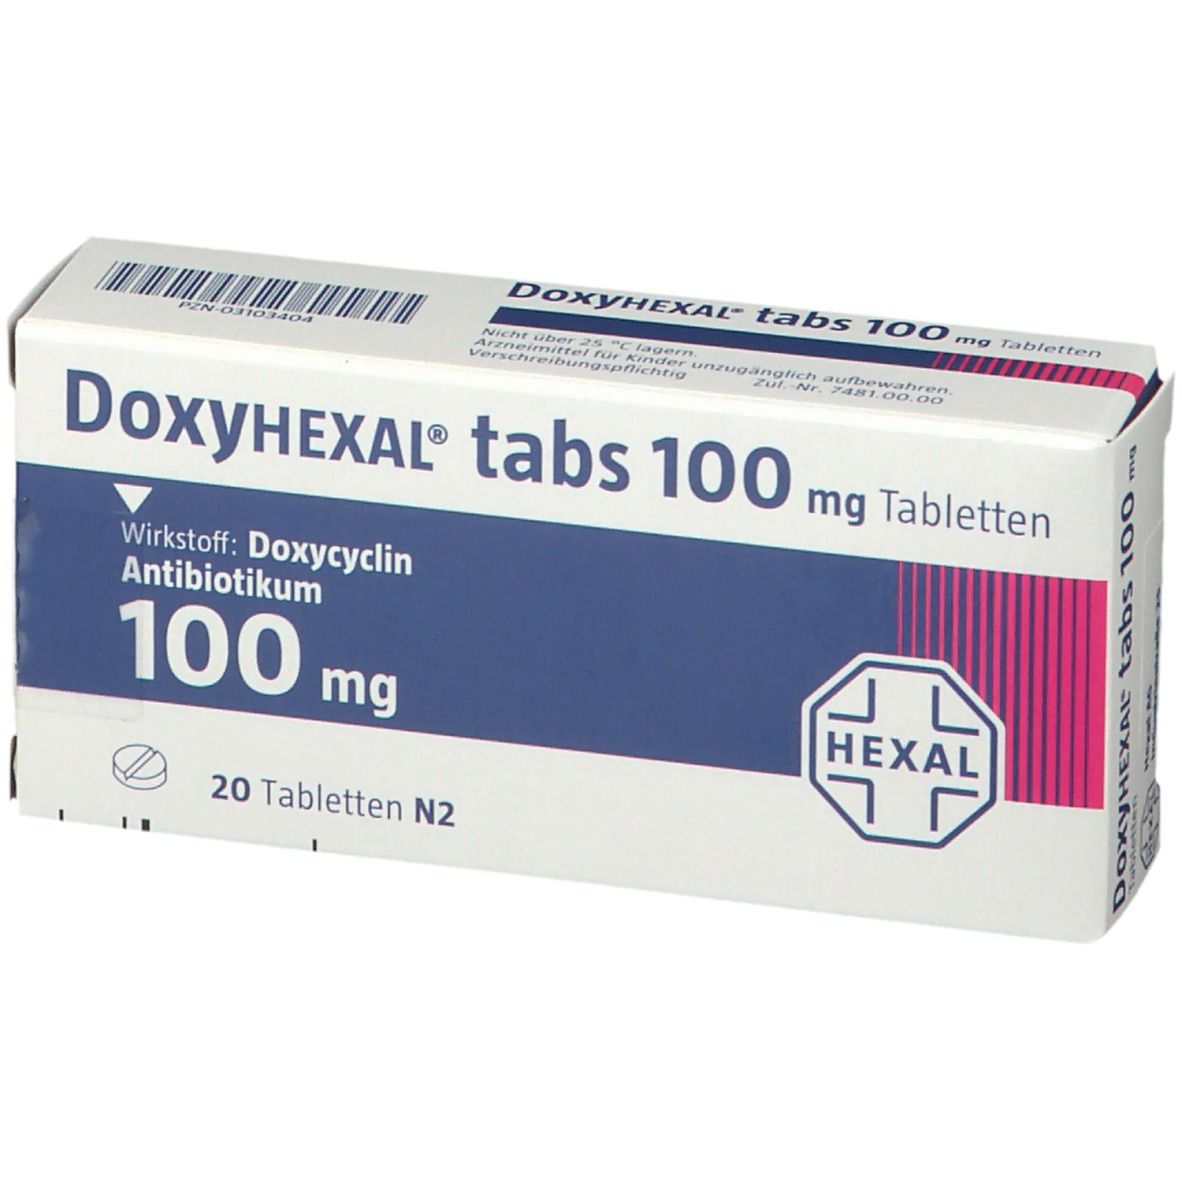 DoxyHEXAL® tabs 100 mg